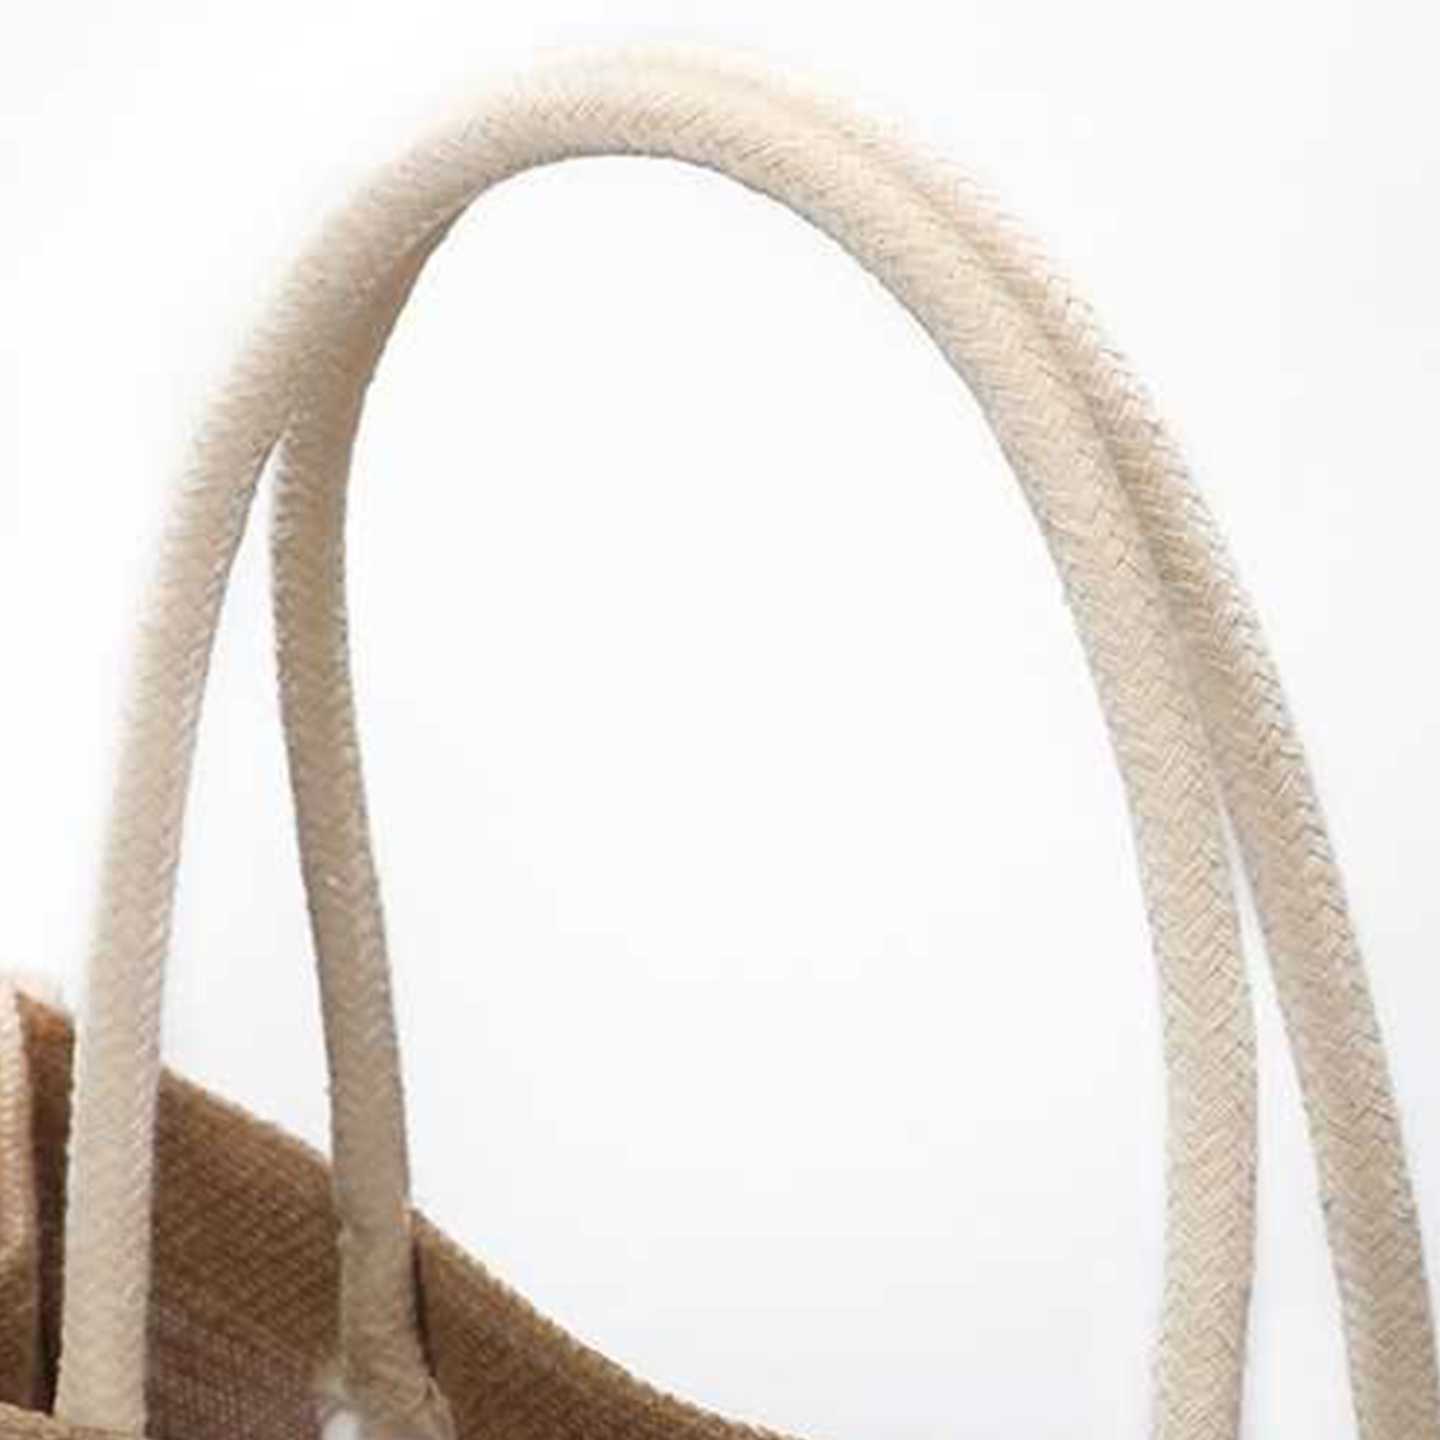 Tanio Torba Juta Shopper - ekologiczna torba na zakupy i prezent, … sklep